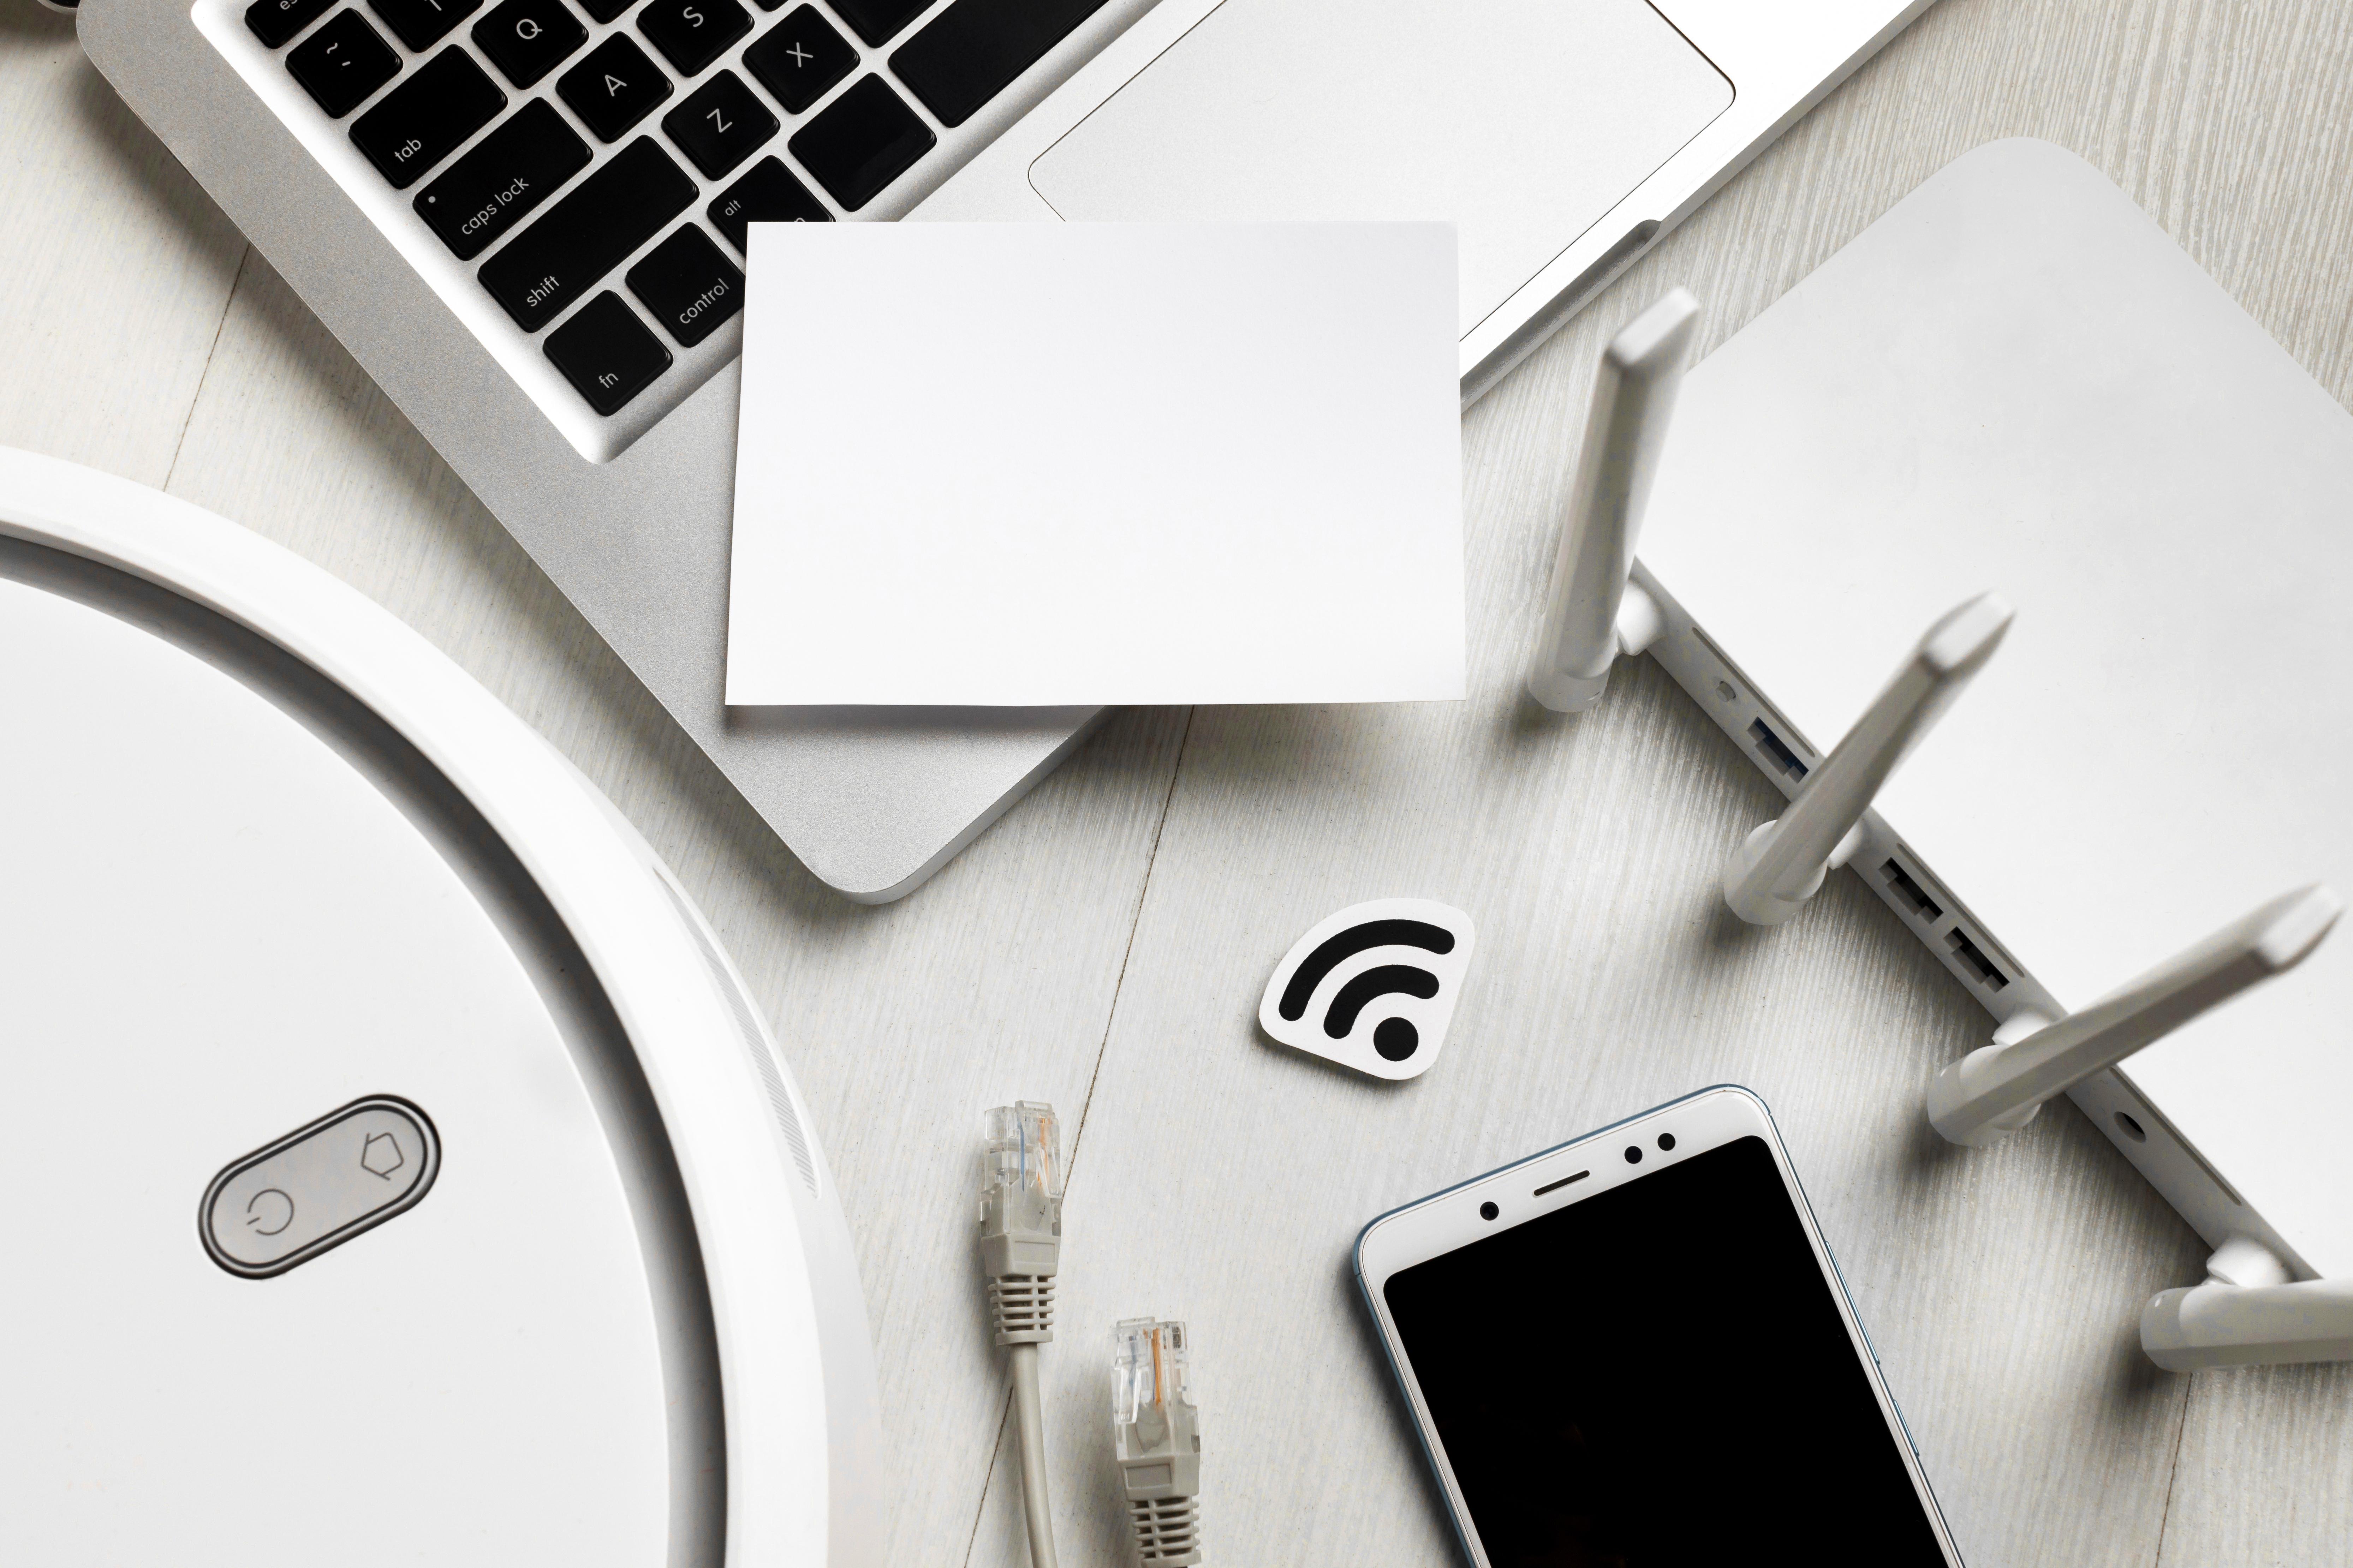 Cómo puedes conectar tu teléfono por cable a internet y qué ventajas ofrece